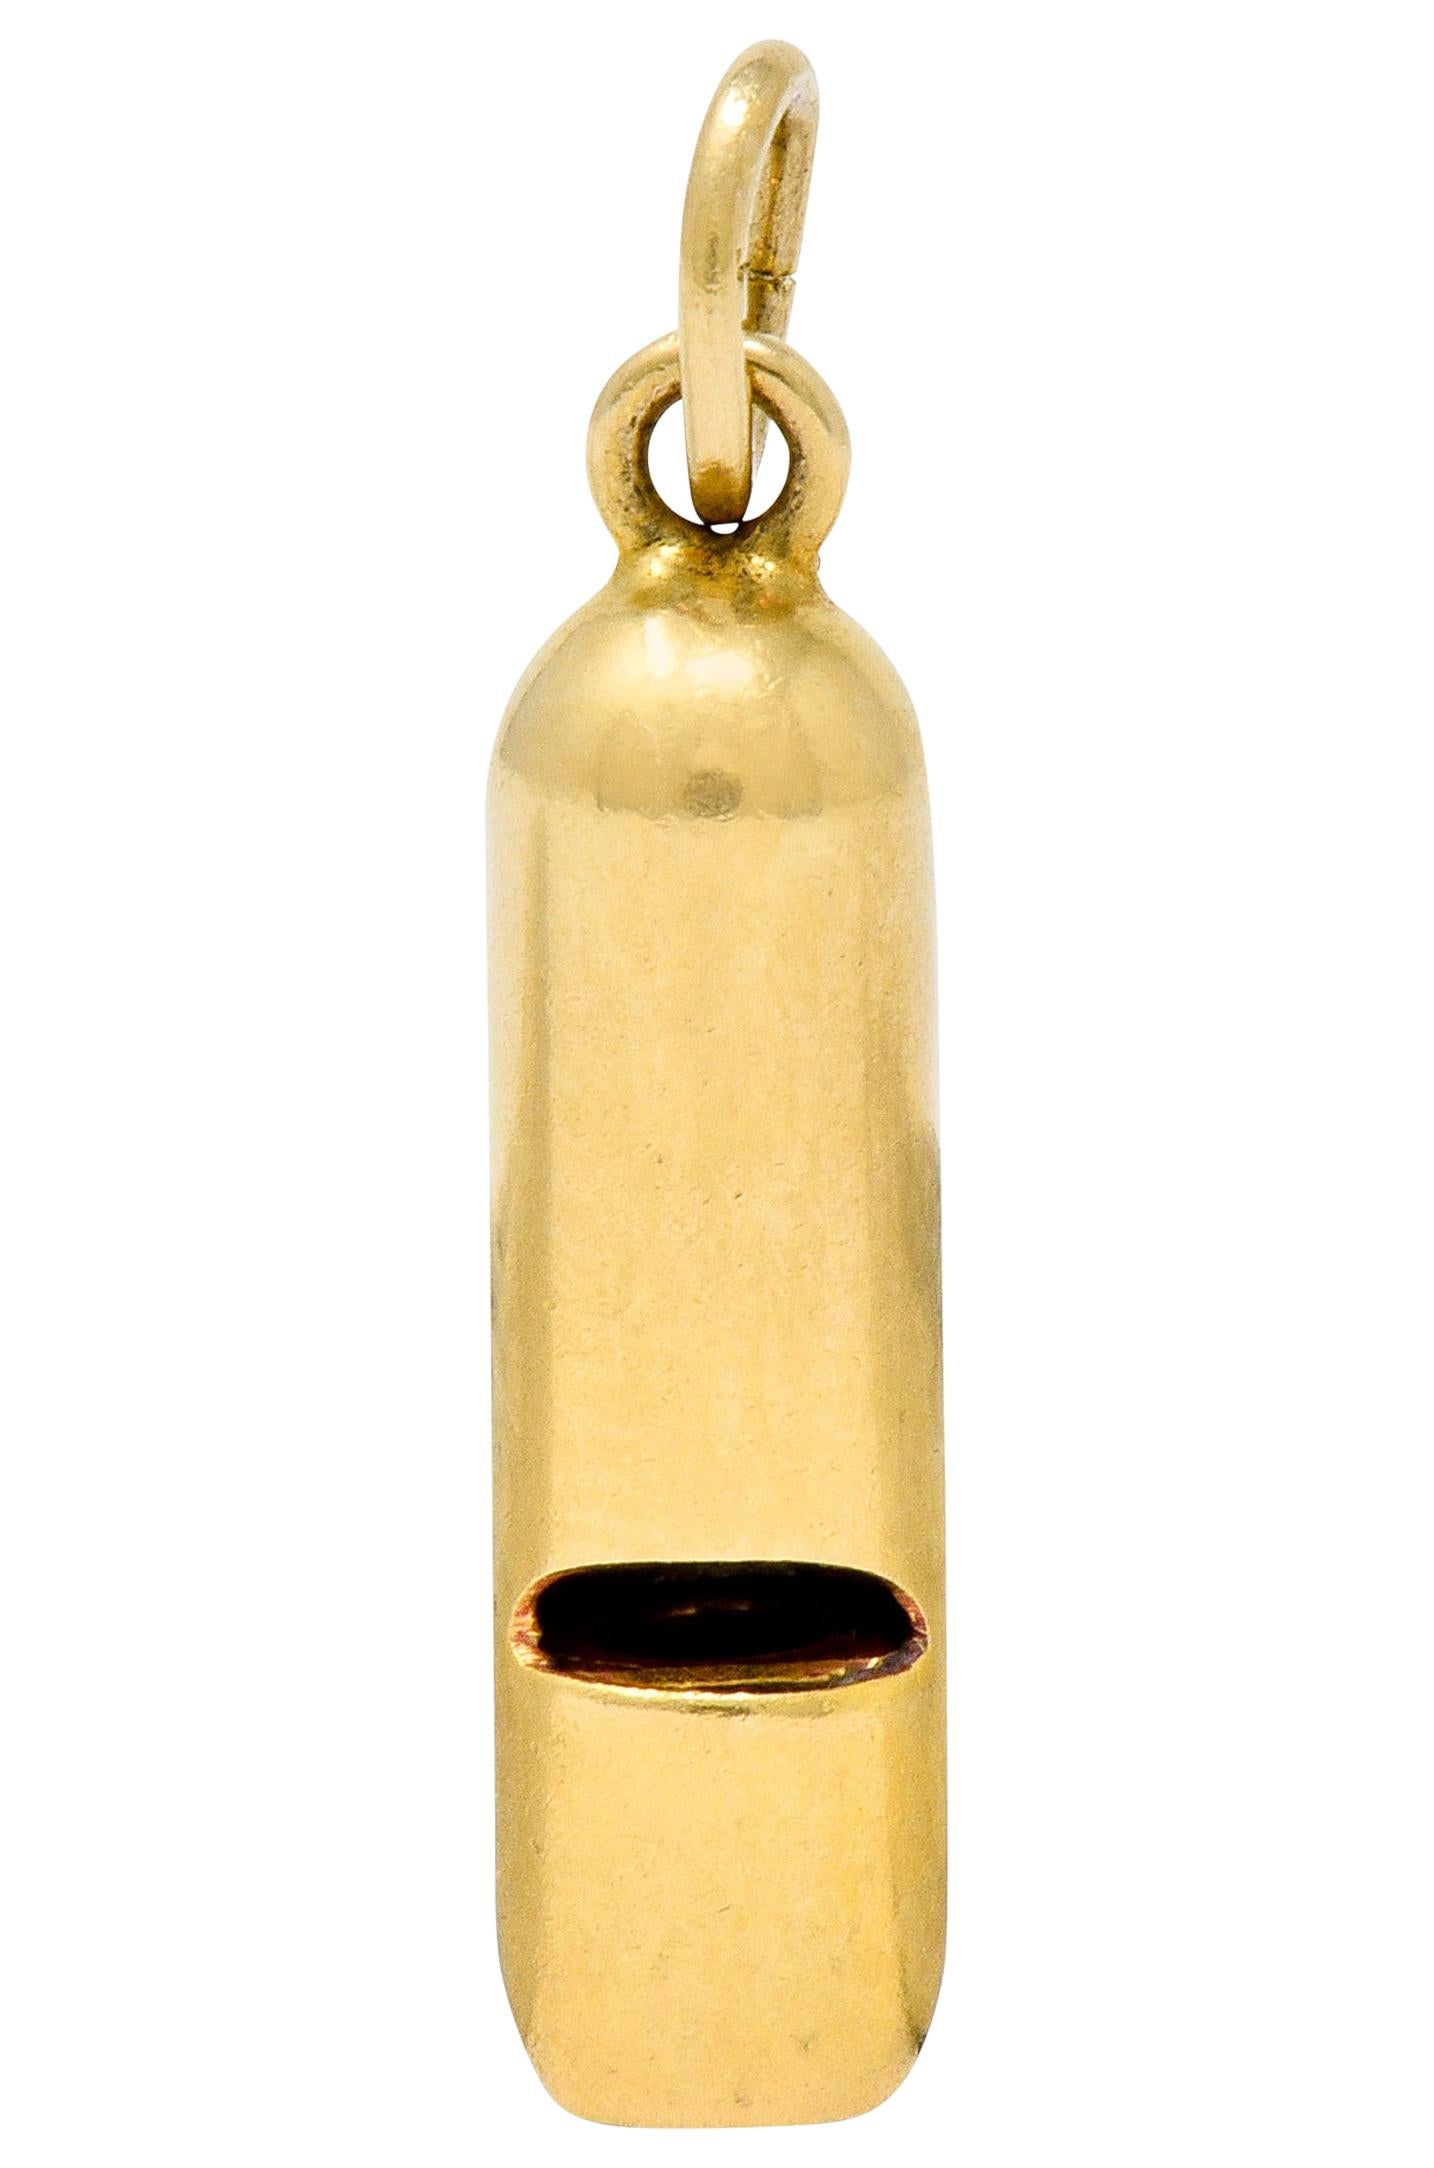 Art Nouveau 14 Karat Gold Functional Antique Whistle Charm